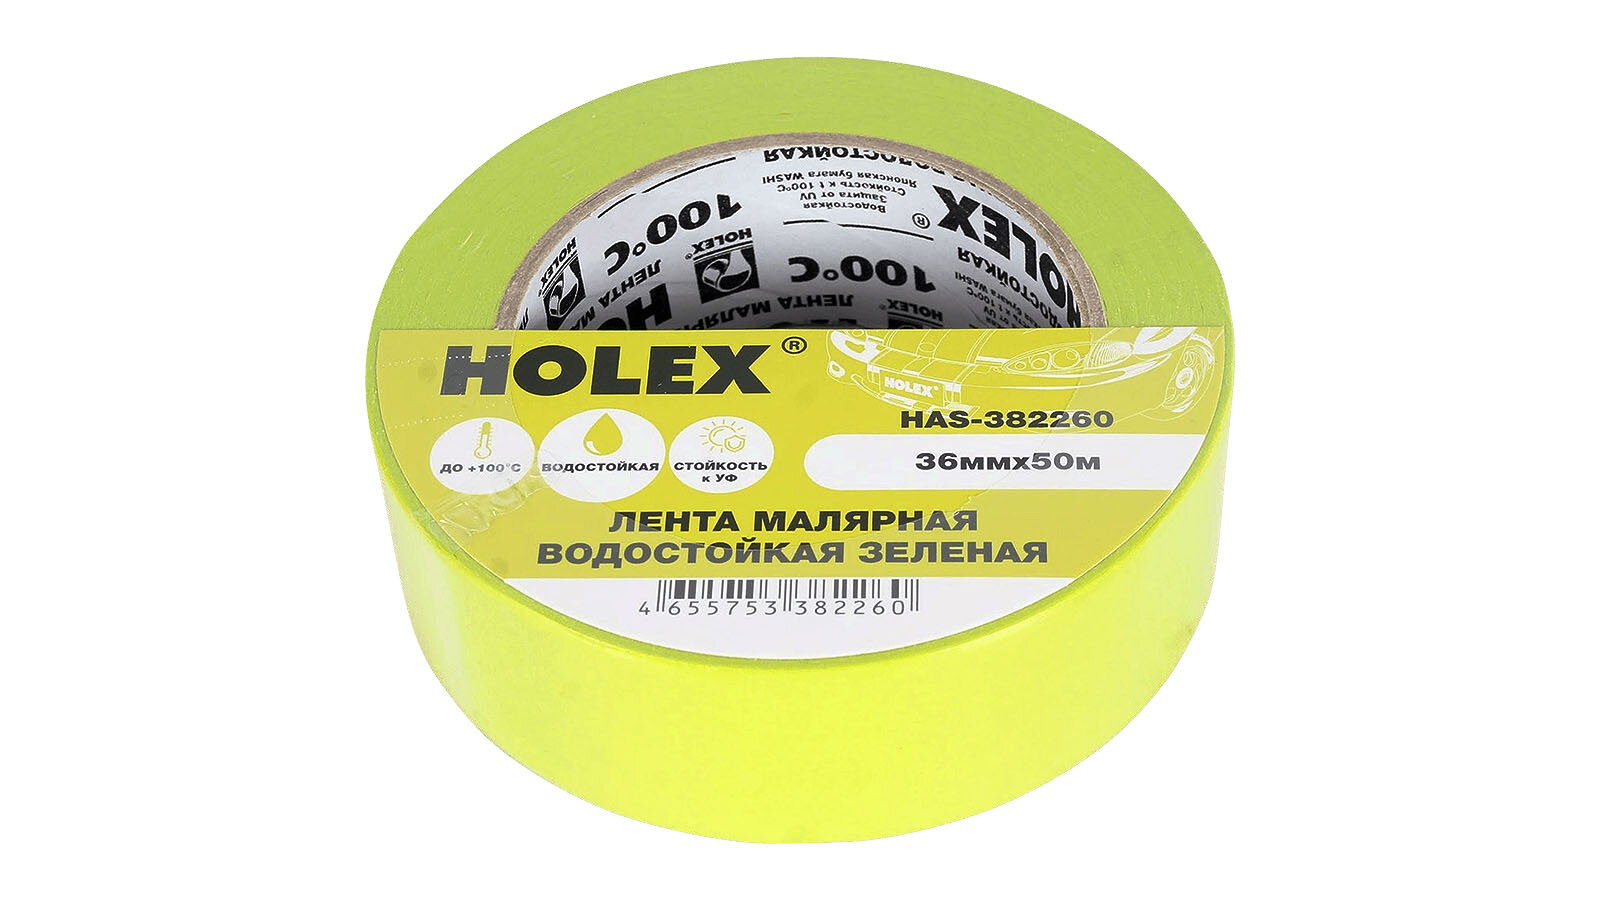 Лента малярная HOLEX жаро- водостойкая до 100С зеленая 36ммх50м